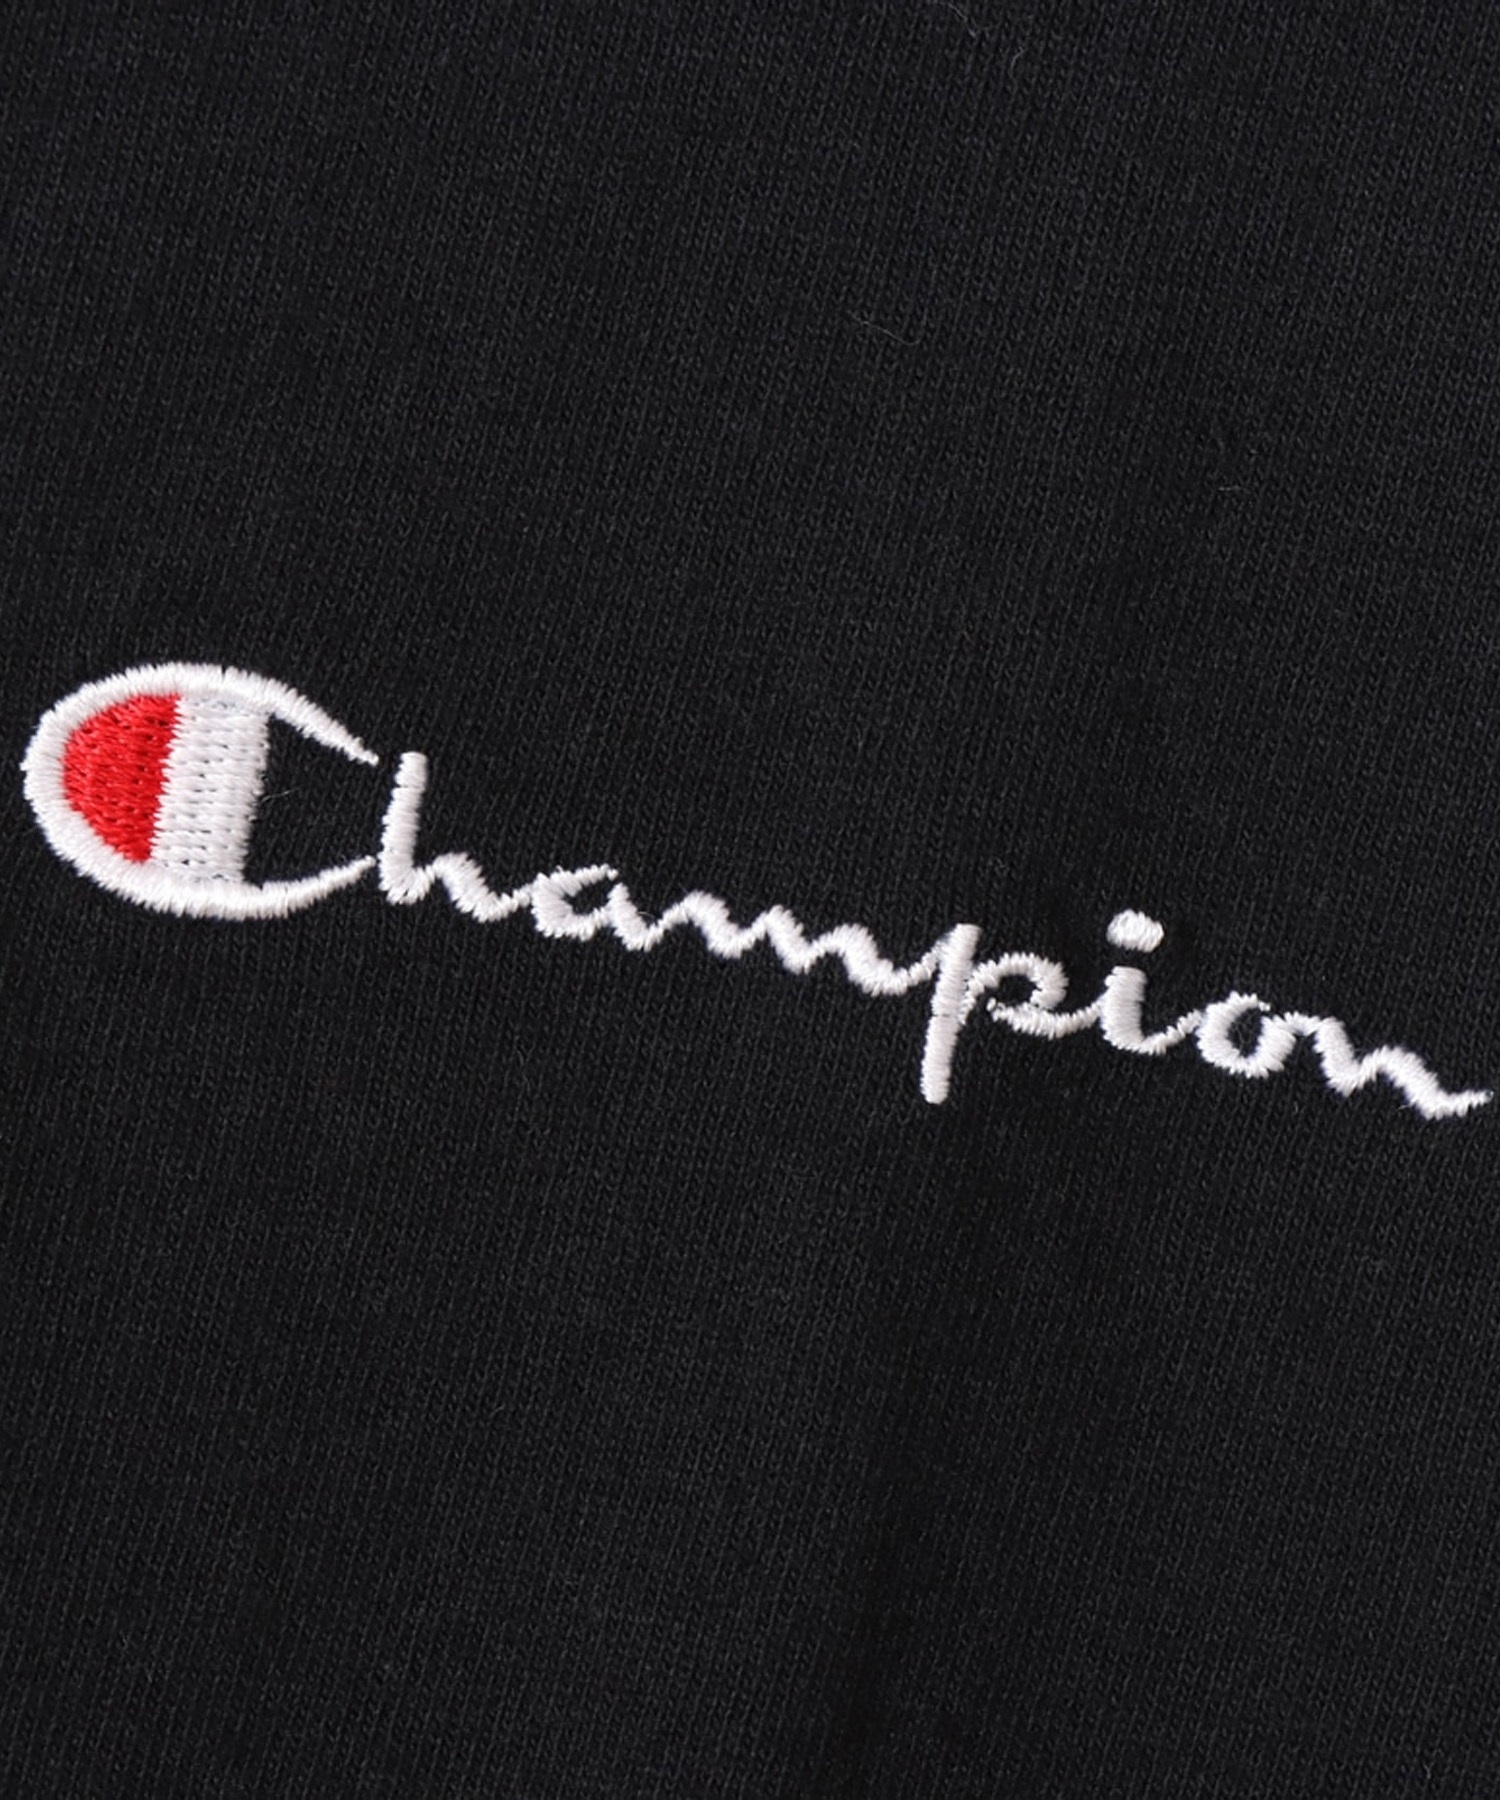 CHAMPION/チャンピオン キッズ 長袖 Tシャツ ワンポイント ロゴ CK-Y404(090-100cm)